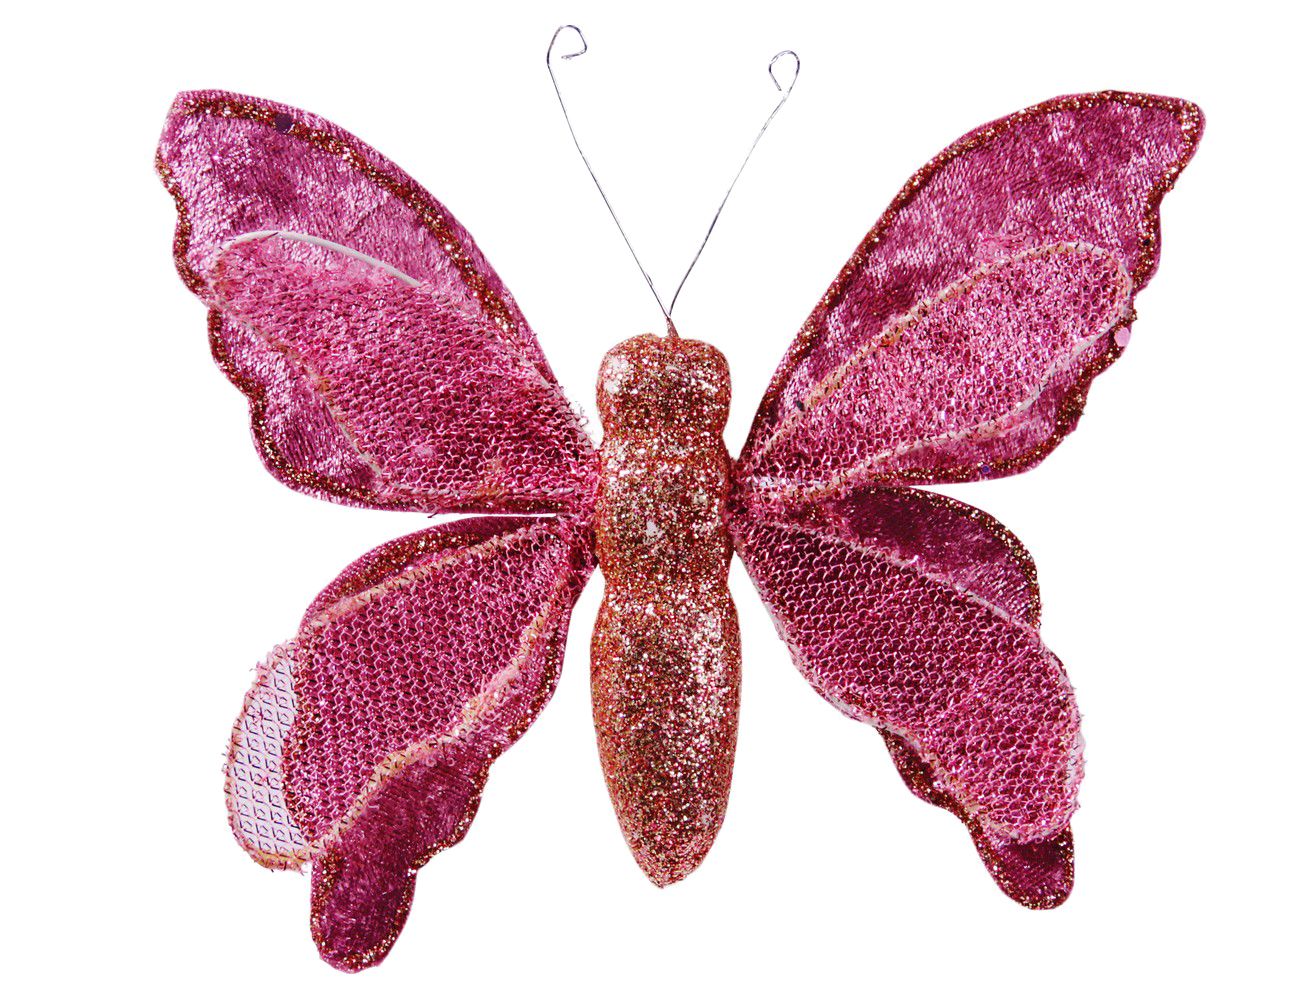 Елочная игрушка Due Esse Christmas бабочка адель 11955496-01 16 см розовый 1 шт.